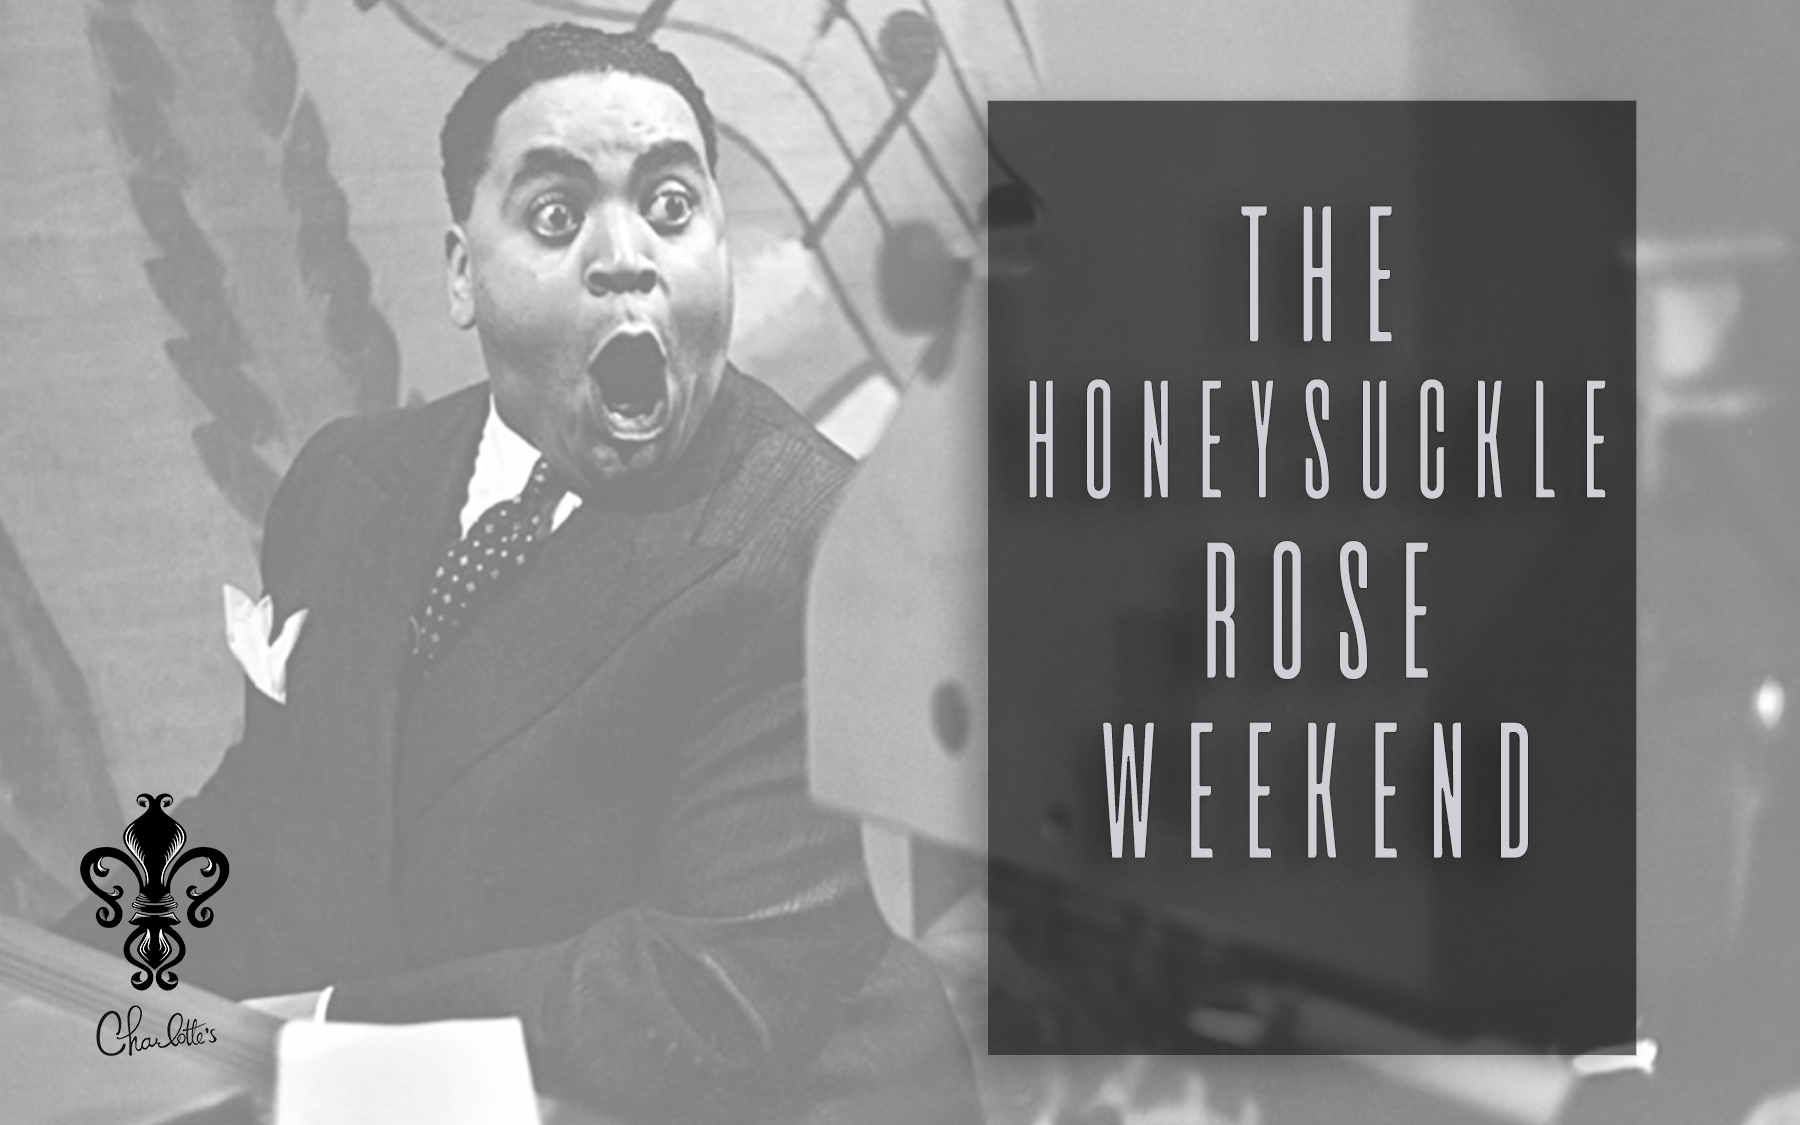 The Honeysuckle Rose Weekend